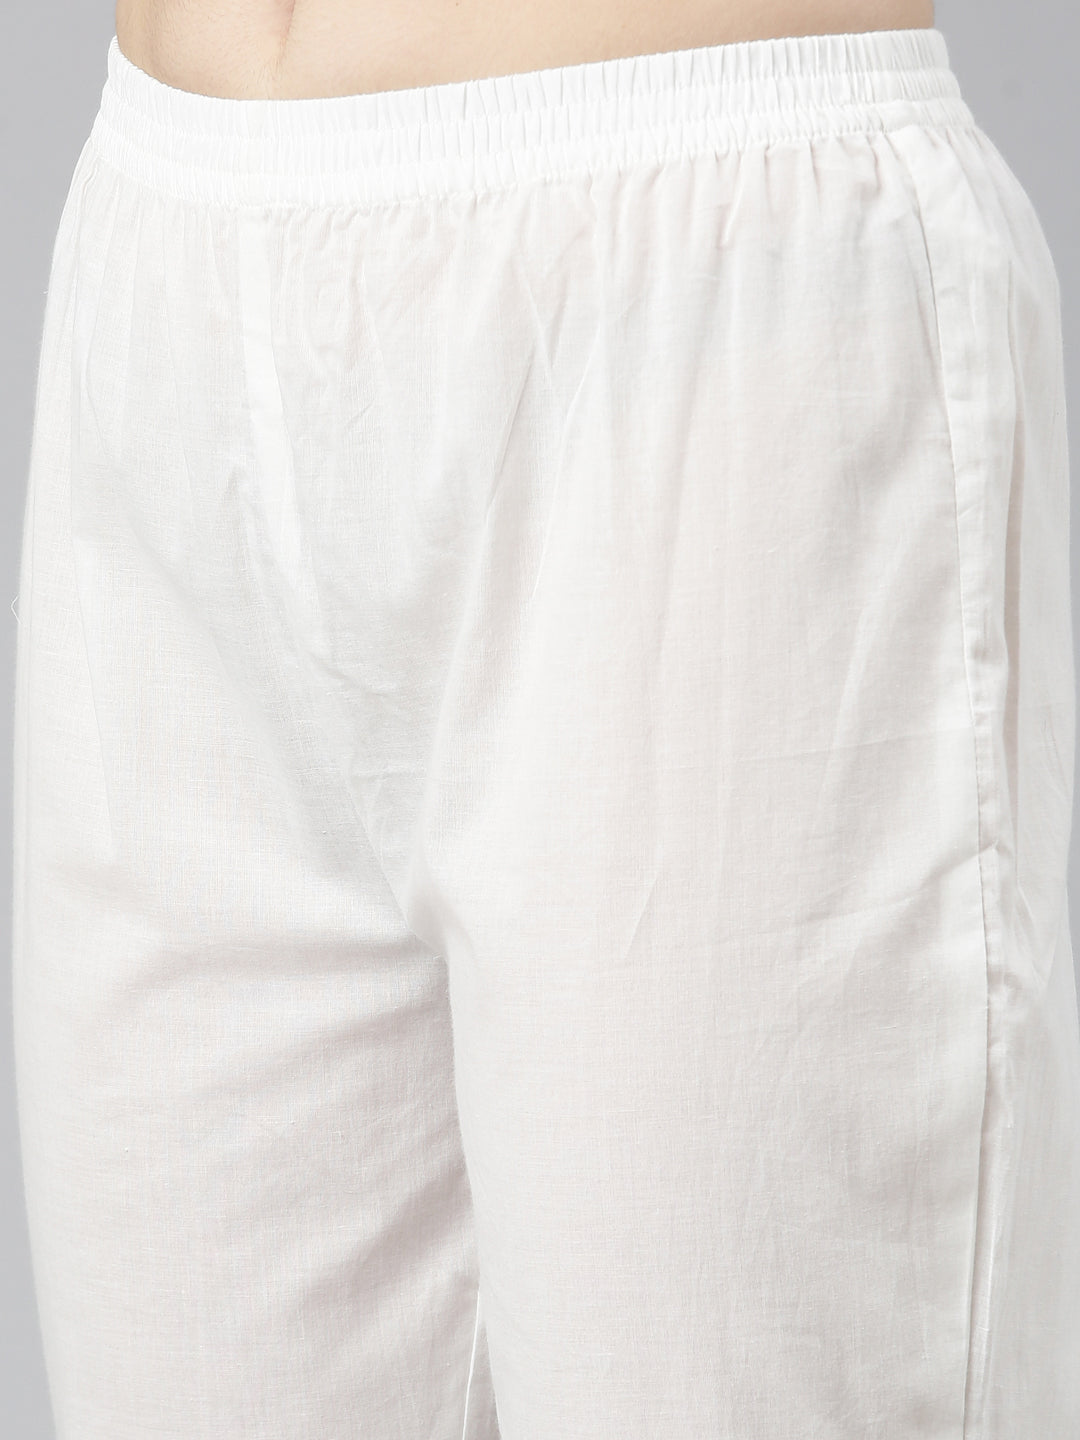 Neerus Off White Regular Straight Printed Kurta And Trousers With Dupatta